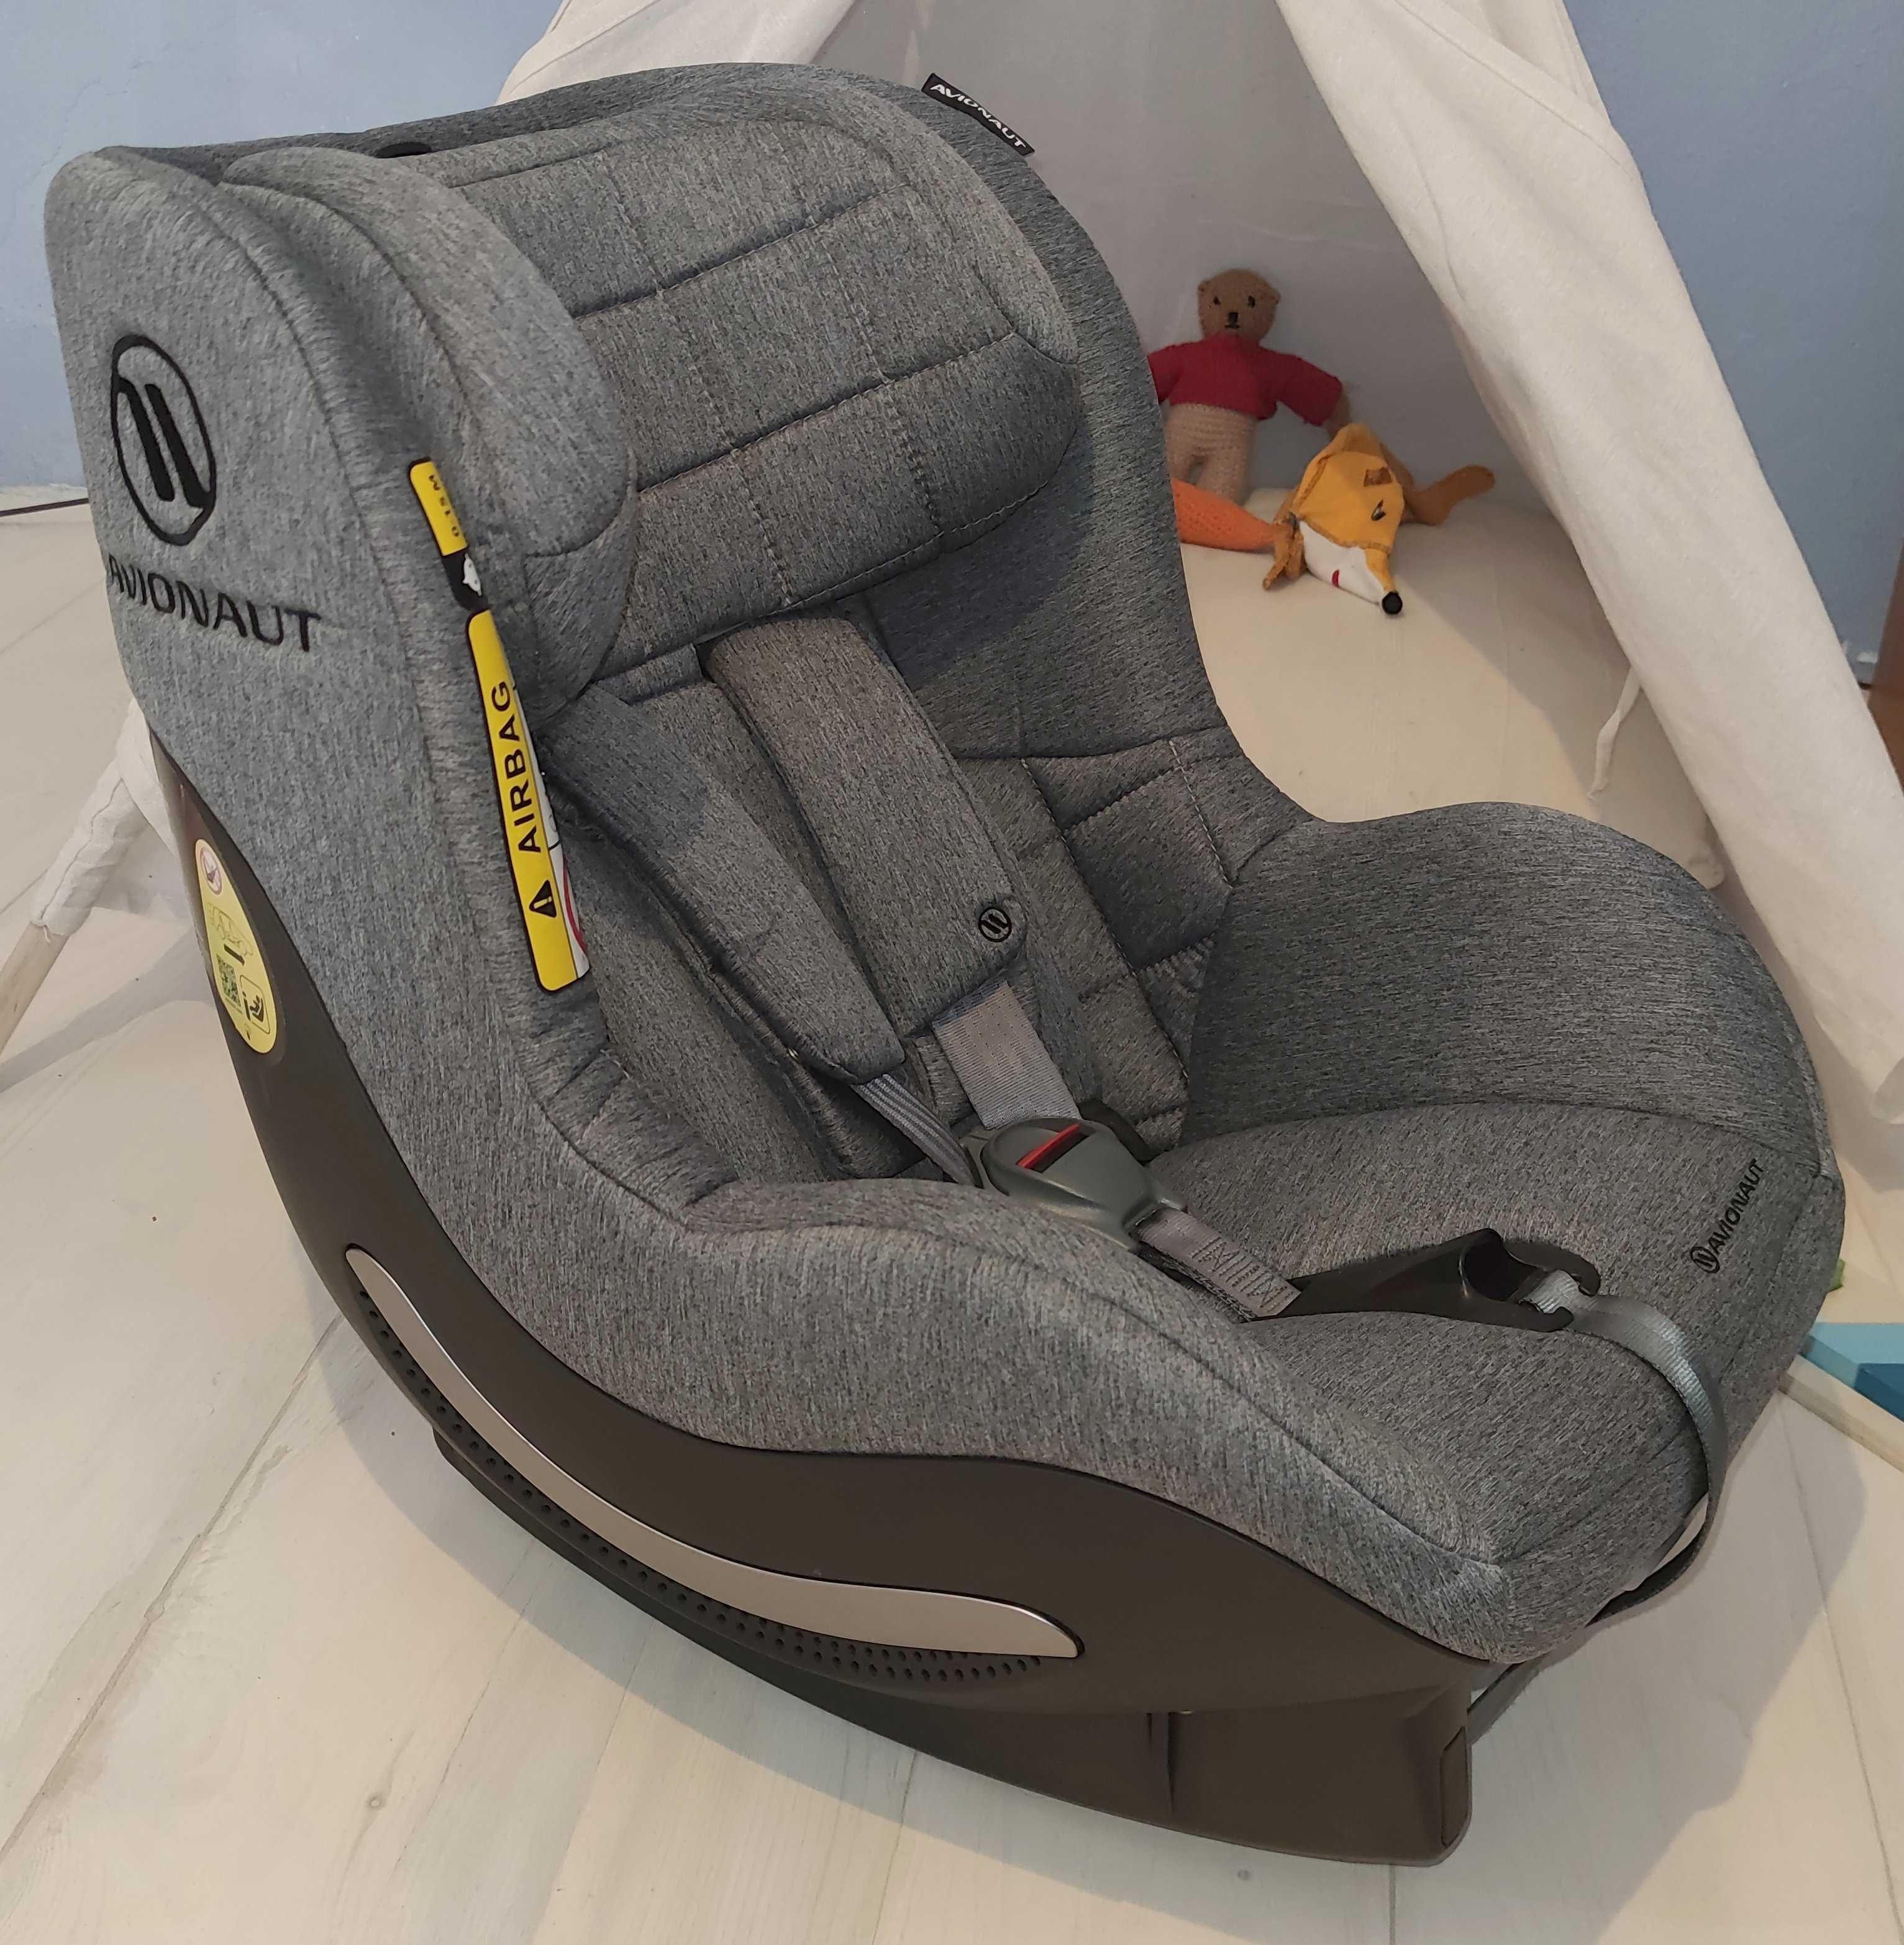 Бебешко столче за кола Avionaut Aerofix RWF 2.0 0-17.5kg + IQ база